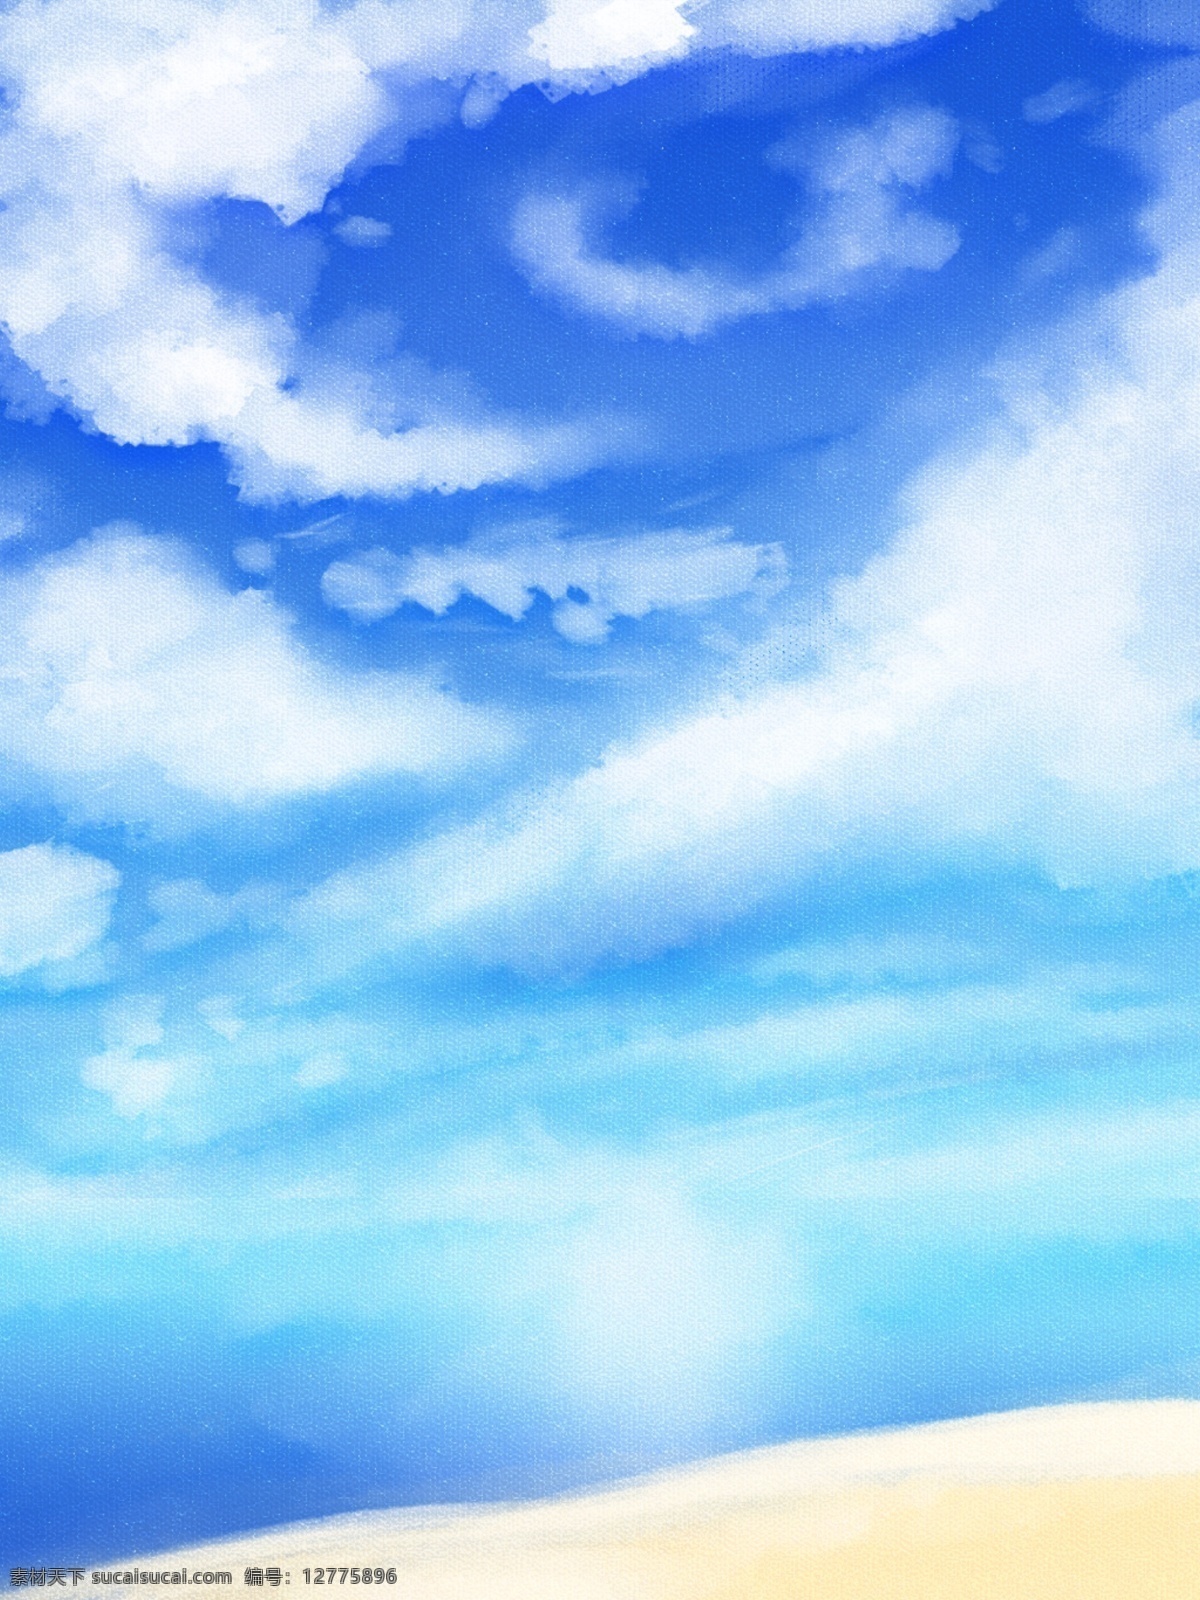 原创 手绘 夏季 夏天 天空 云彩 风景 背景 手绘背景 蓝天白云 天空背景 云彩背景 夏天背景 海边背景